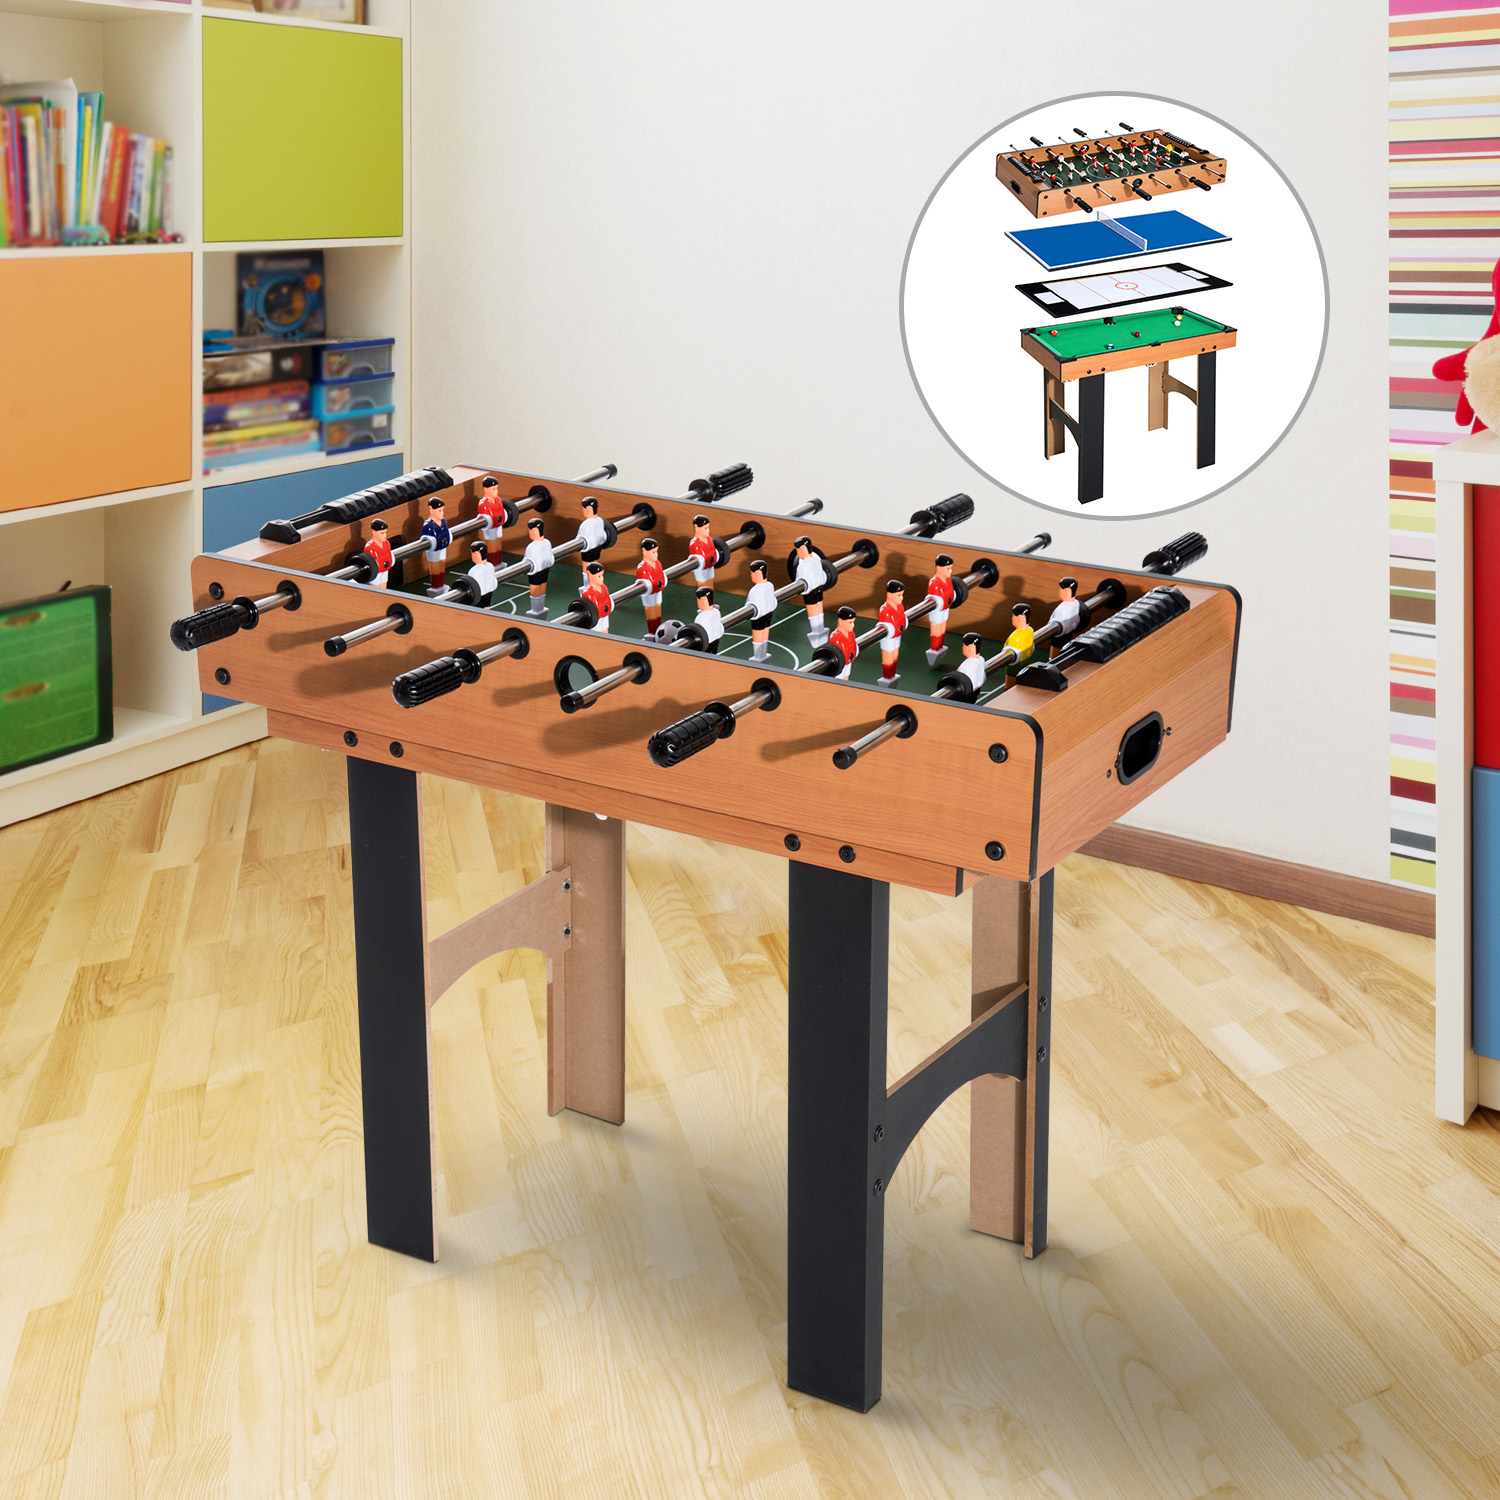 Multifunkciós játékasztal 4 az 1-ben, asztali foci, asztalitenisz, jégkorong és biliárd